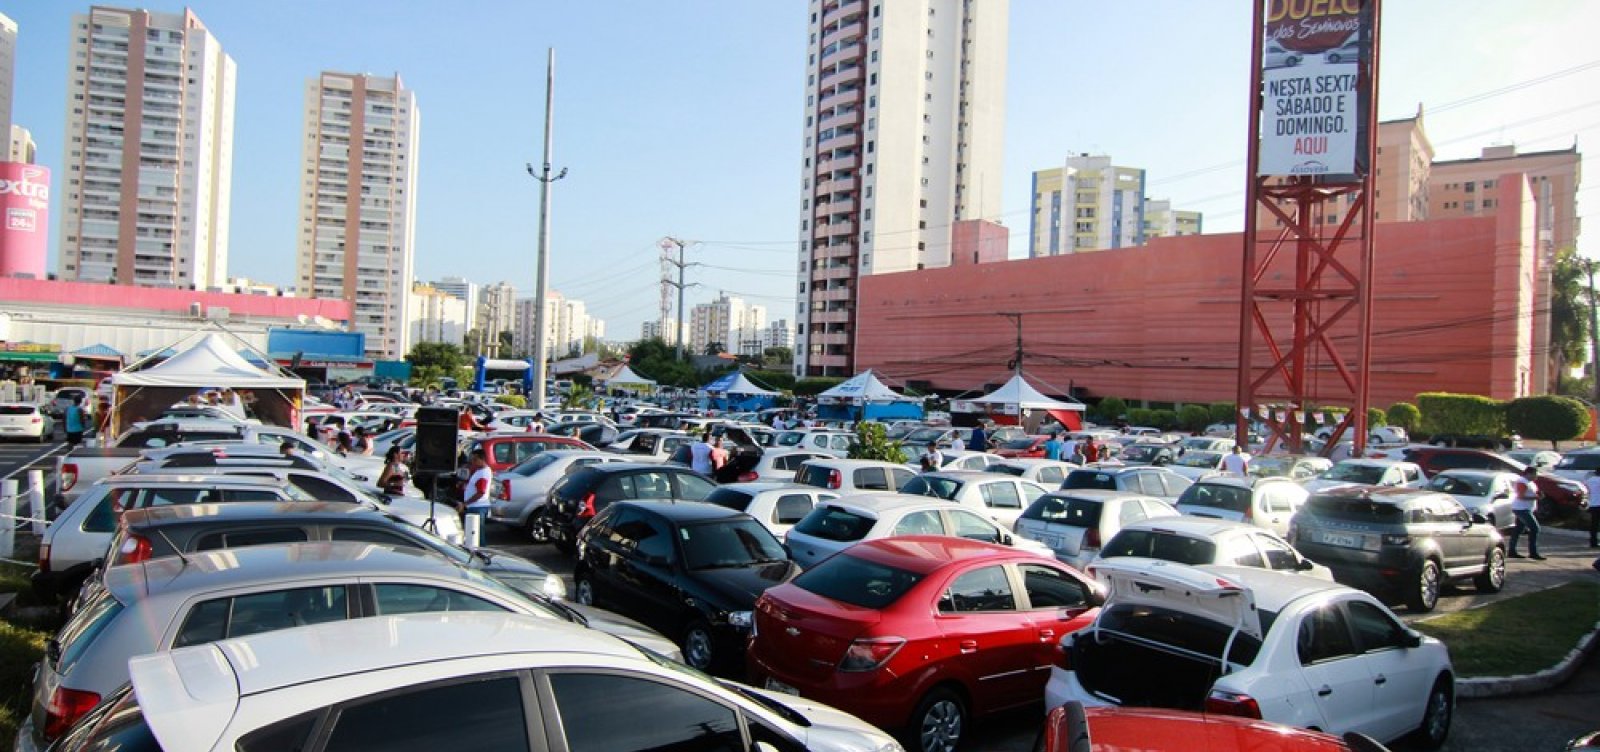 Feirão revende veículos seminovos com descontos de até R$ 8 mil